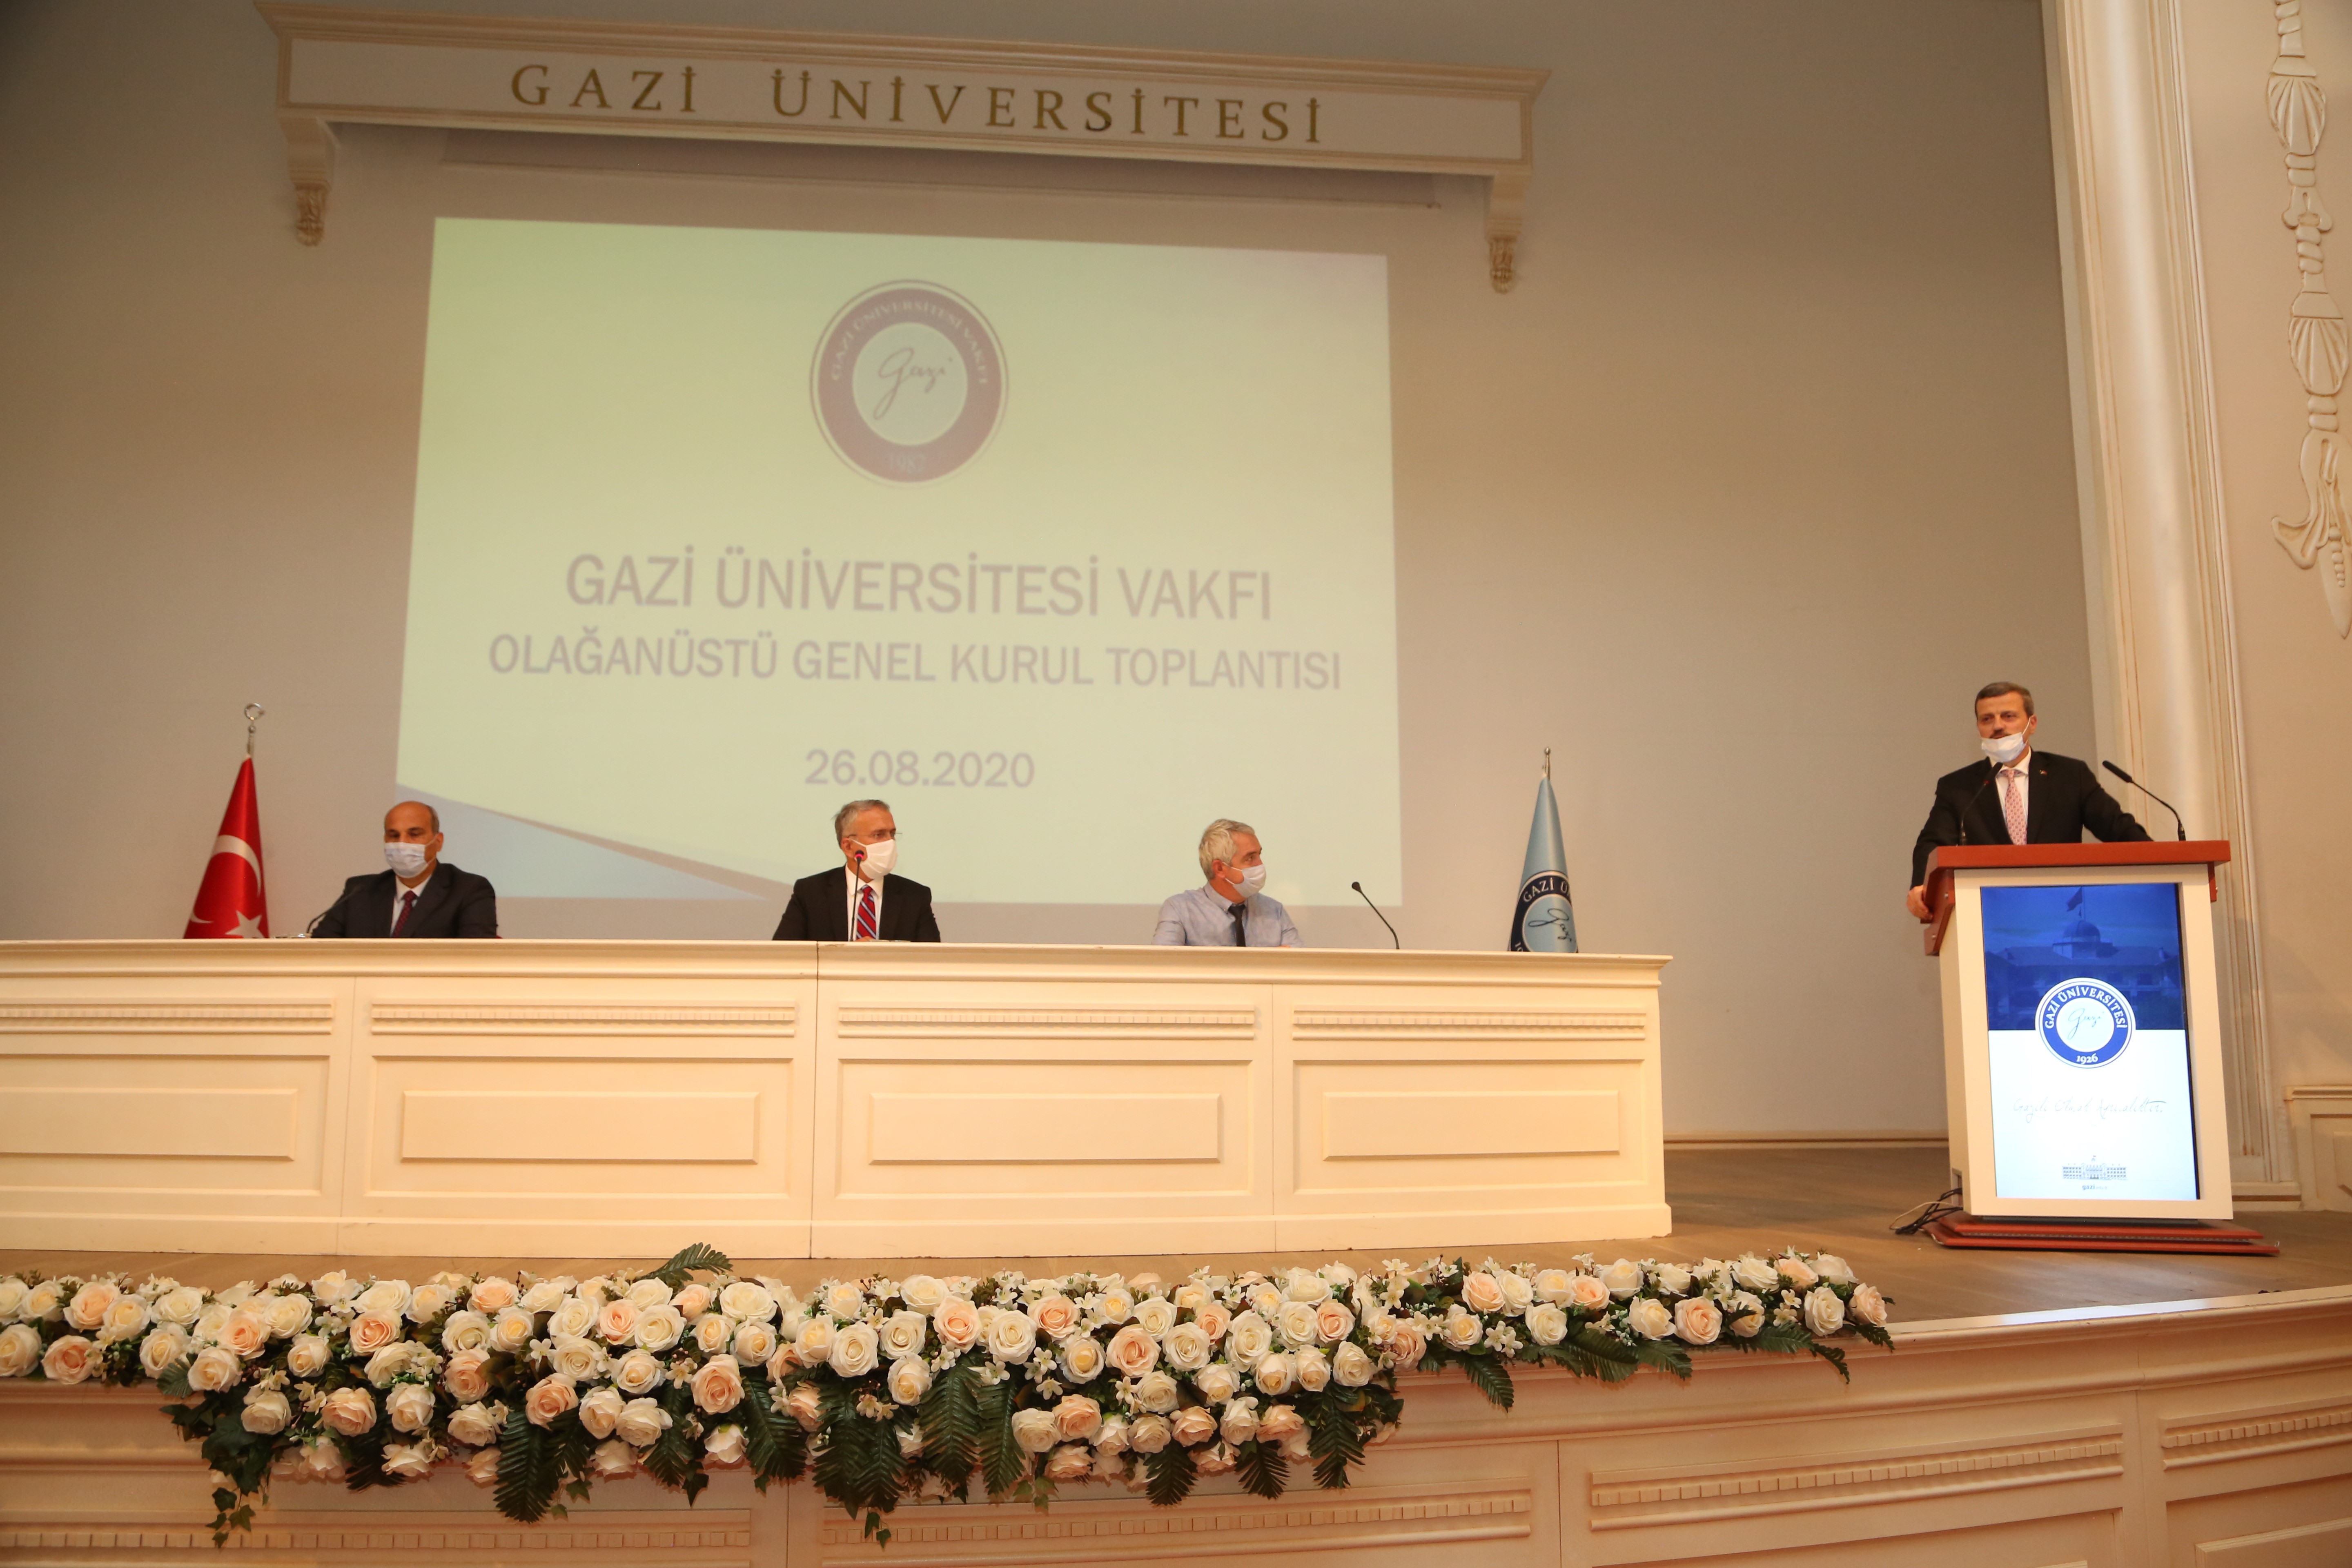 Gazi Üniversitesi Vakfı Olağanüstü Genel Kurul Toplantısı Mimar Kemaleddin Salonunda Gerçekleştirildi